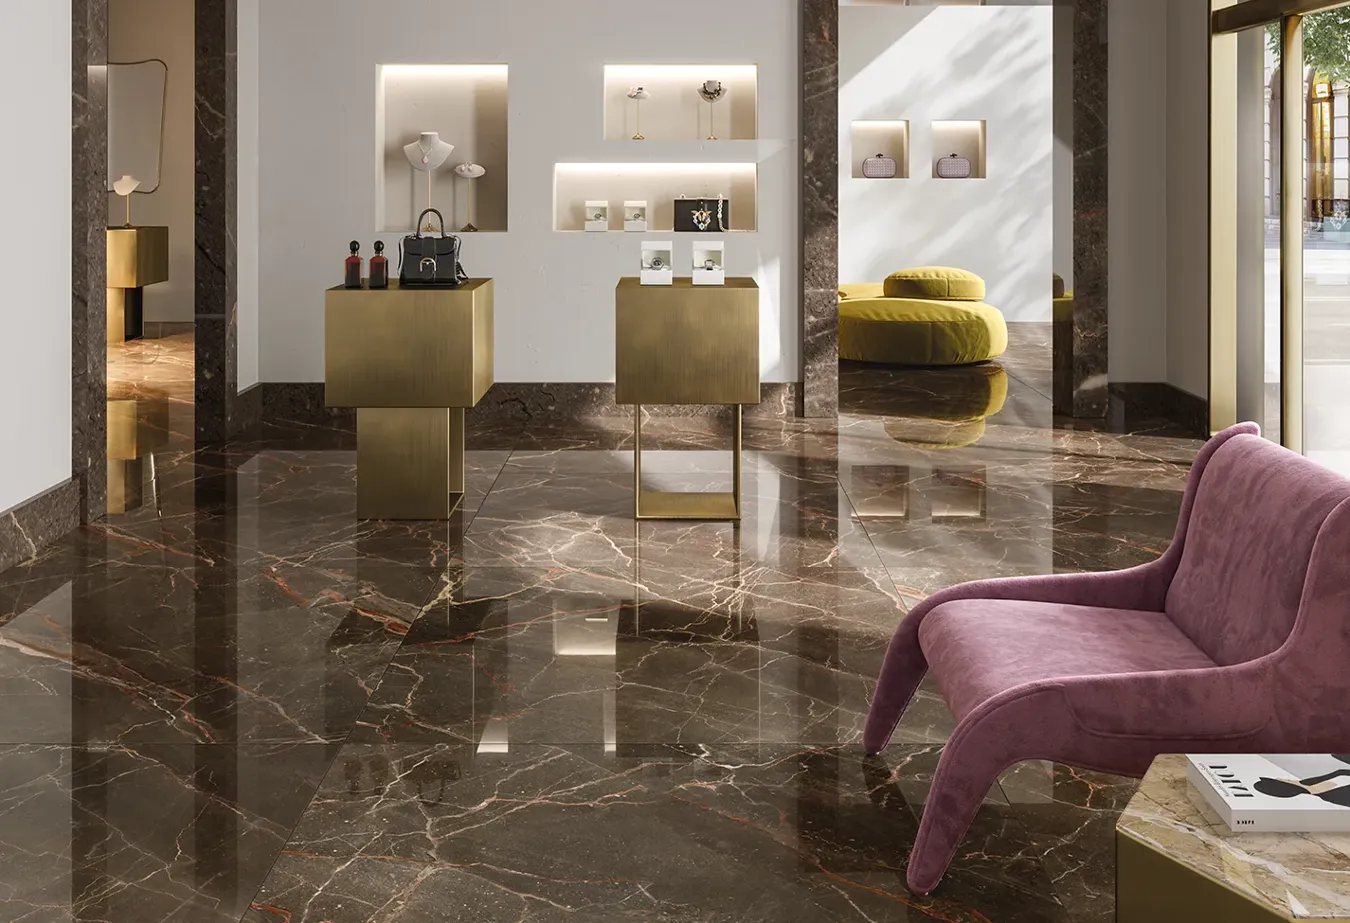 Sol en grès cérame effet marbre Ombra Moca de la collection 9cento, assorti de meubles en bronze et de détails en velours rose.